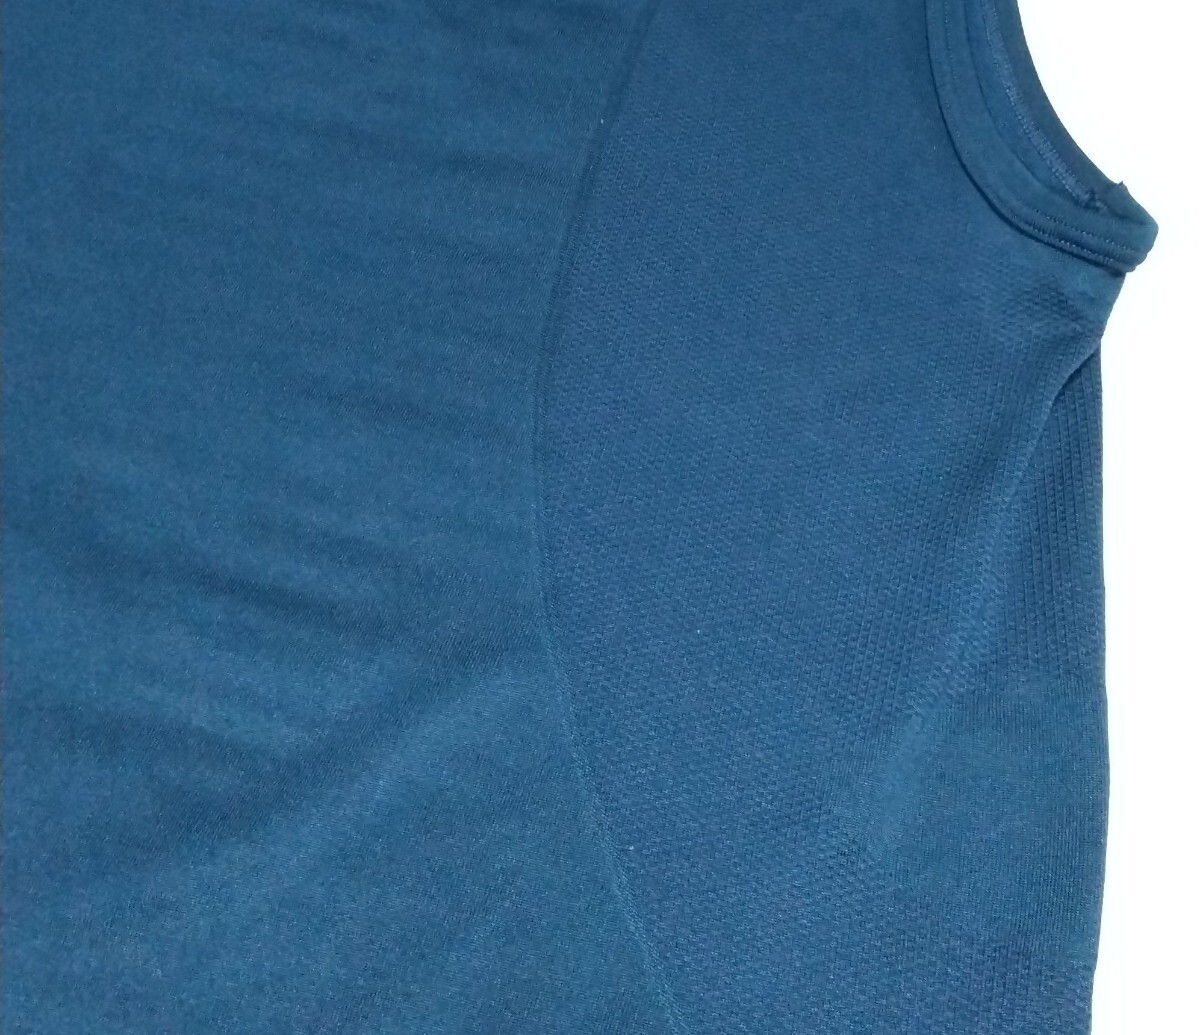 ☆NIKE ナイキ ノースリーブ ストレッチ スリーブレス シャツ大きなサイズ(2XL以上)ネイビー紺色メッシュ薄手超軽量 肩幅 約51身幅57丈85cm_※メッシュの部分があります。